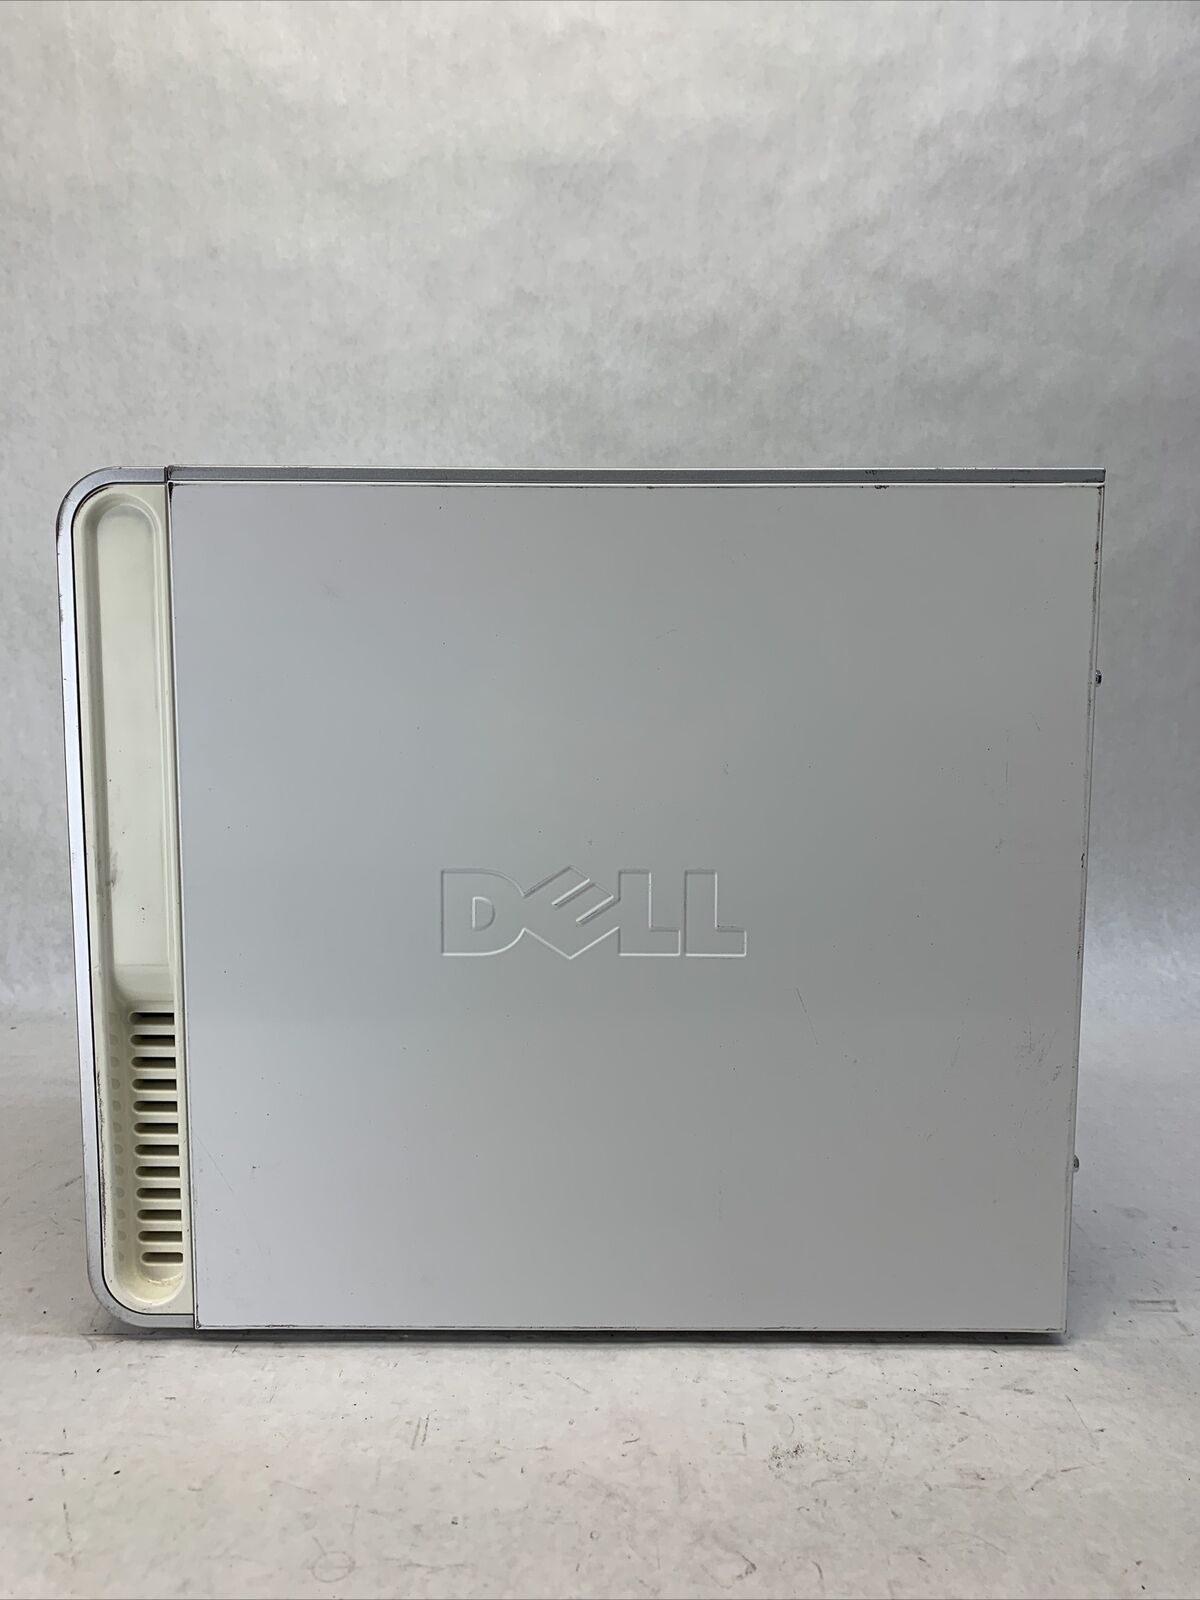 Dell Inspiron 531 MT AMD Athlon 64 x2 4000+ 2.1GHz 2GB RAM No HDD No OS